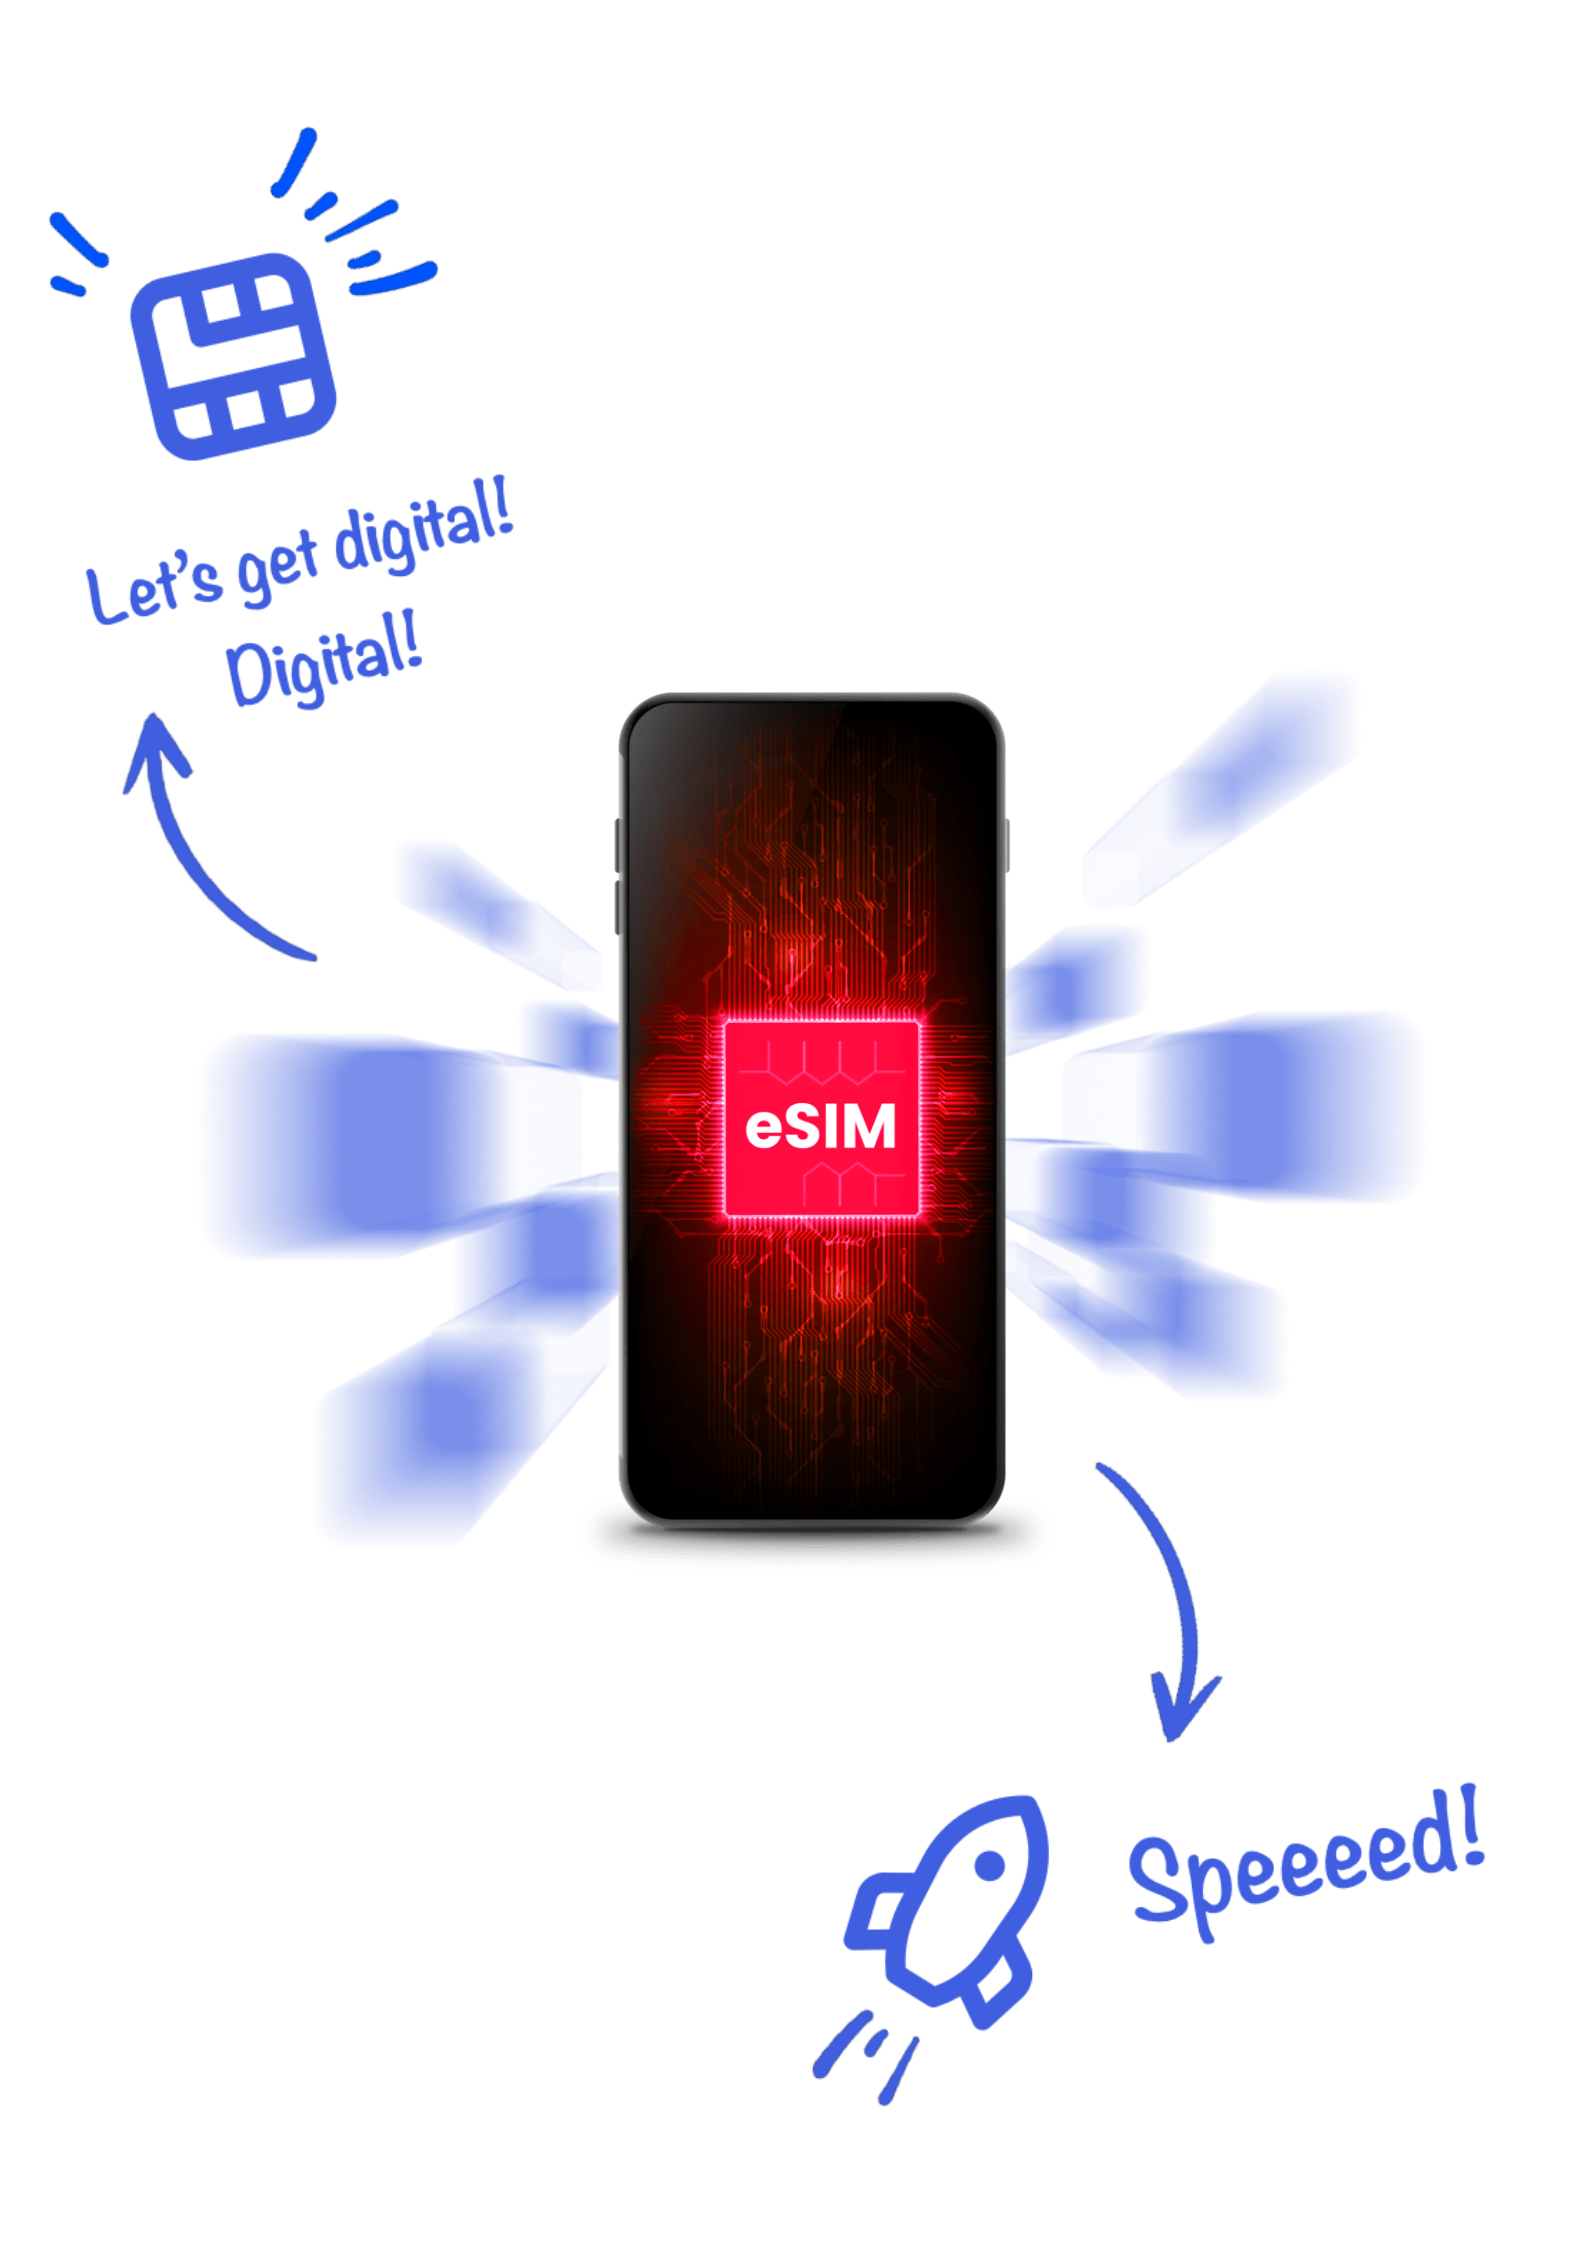 Virgin Mobile eSIM digital speed